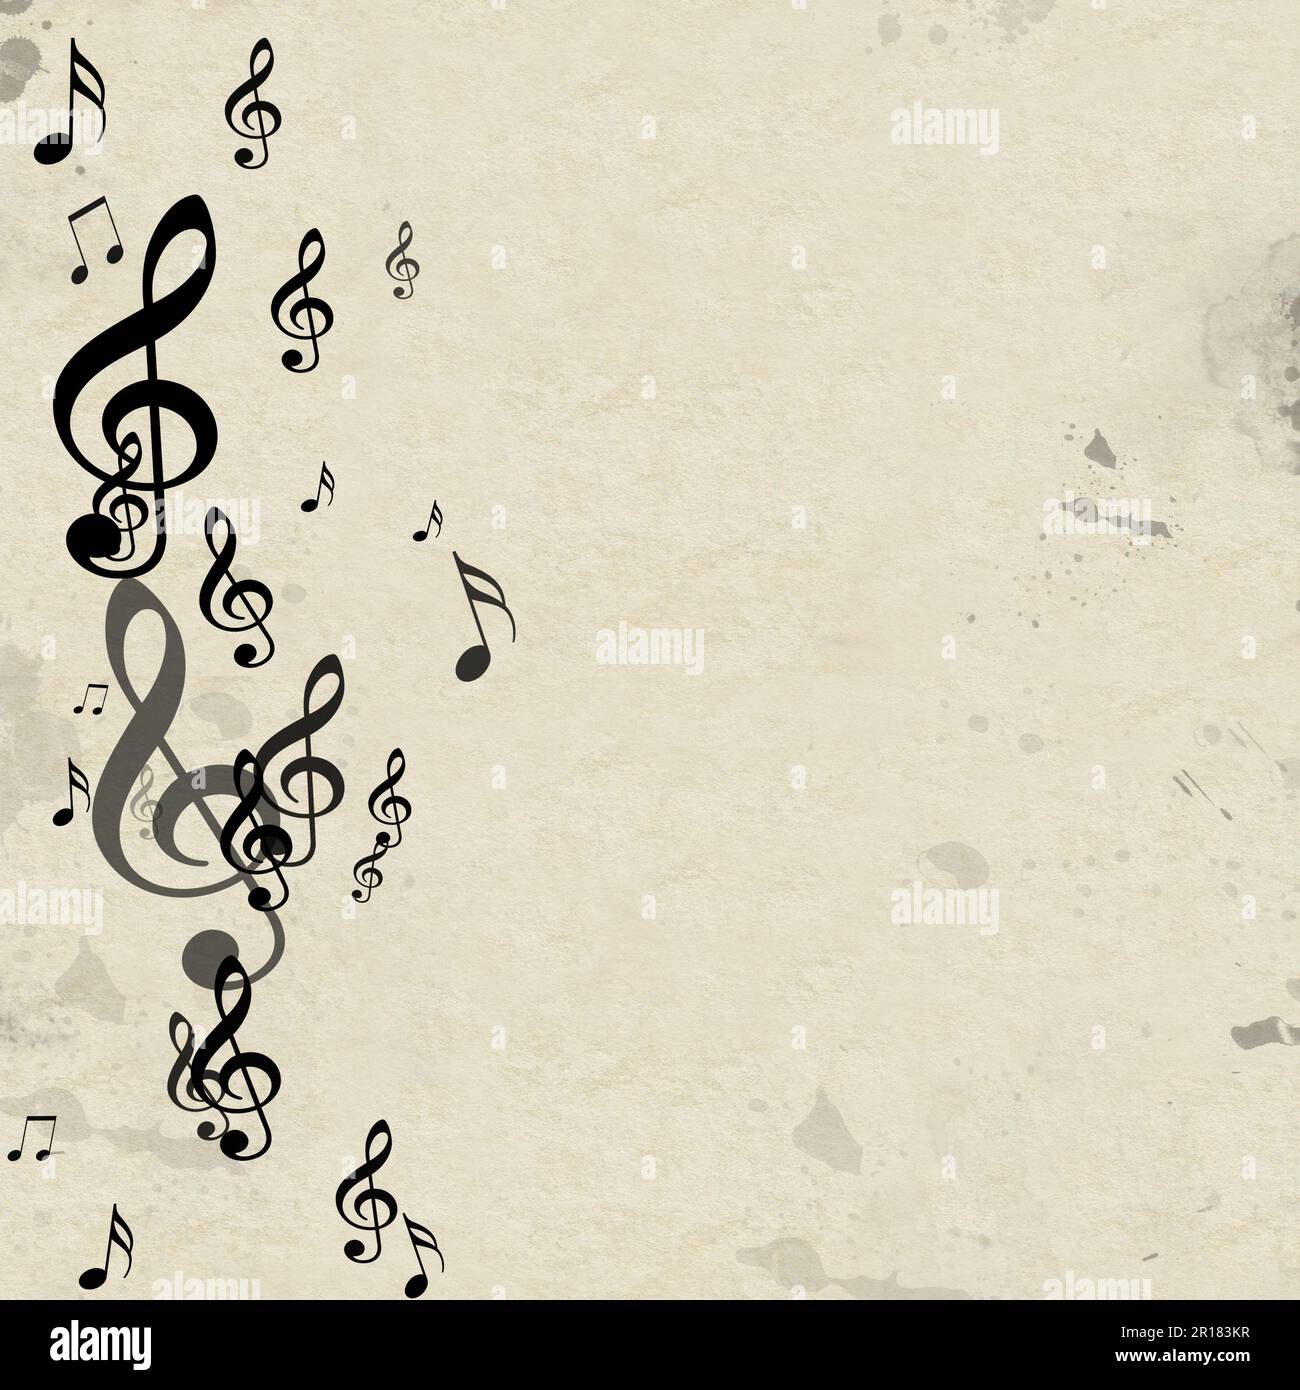 Pupitre musique Banque d'images vectorielles - Alamy